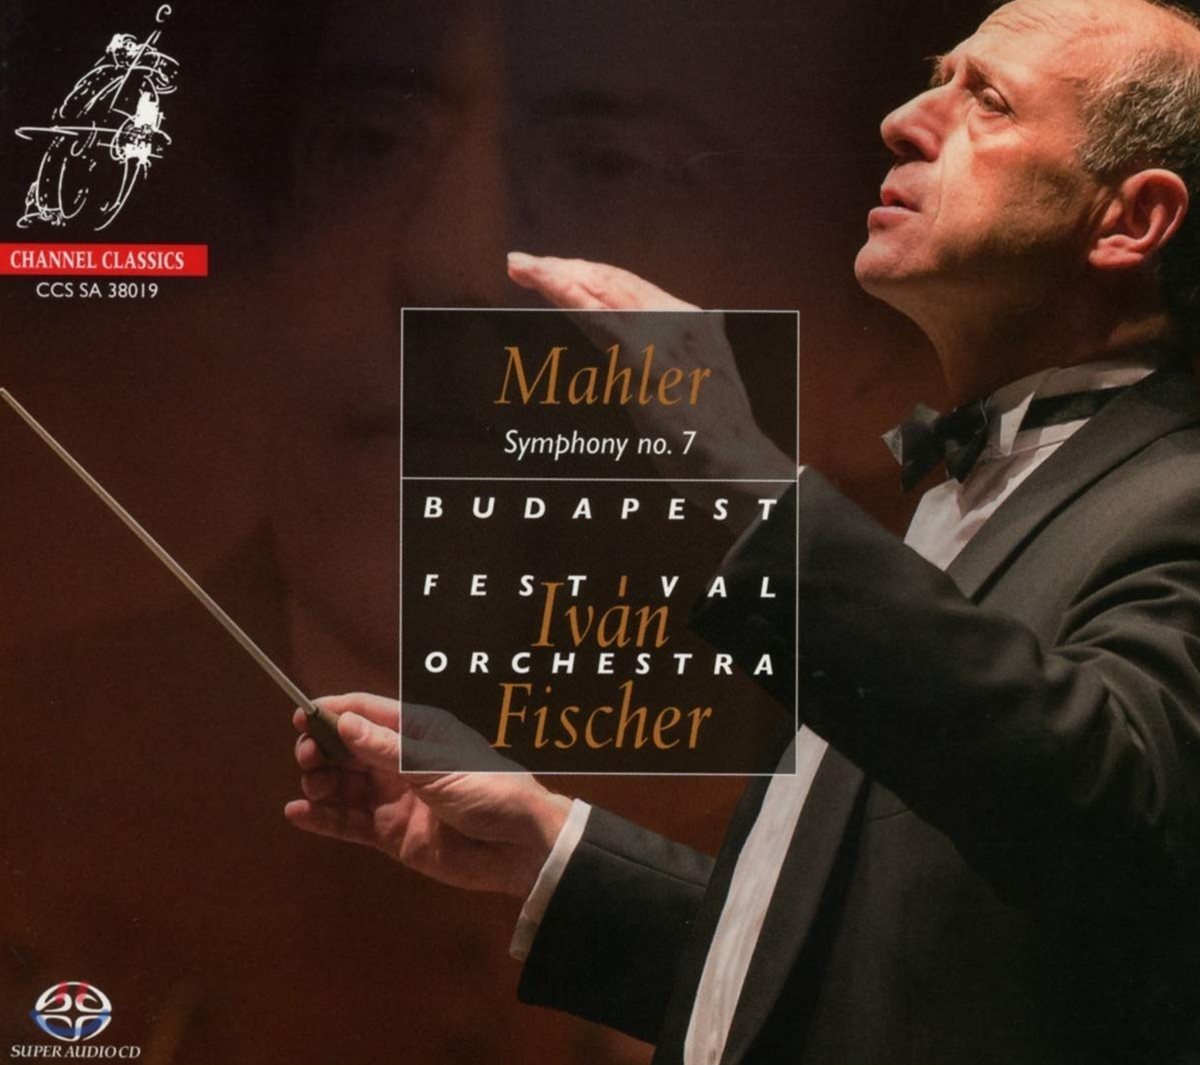 Ivan Fischer 말러: 교향곡 7번 - 이반 피셔 (Mahler: Symphony No. 7)